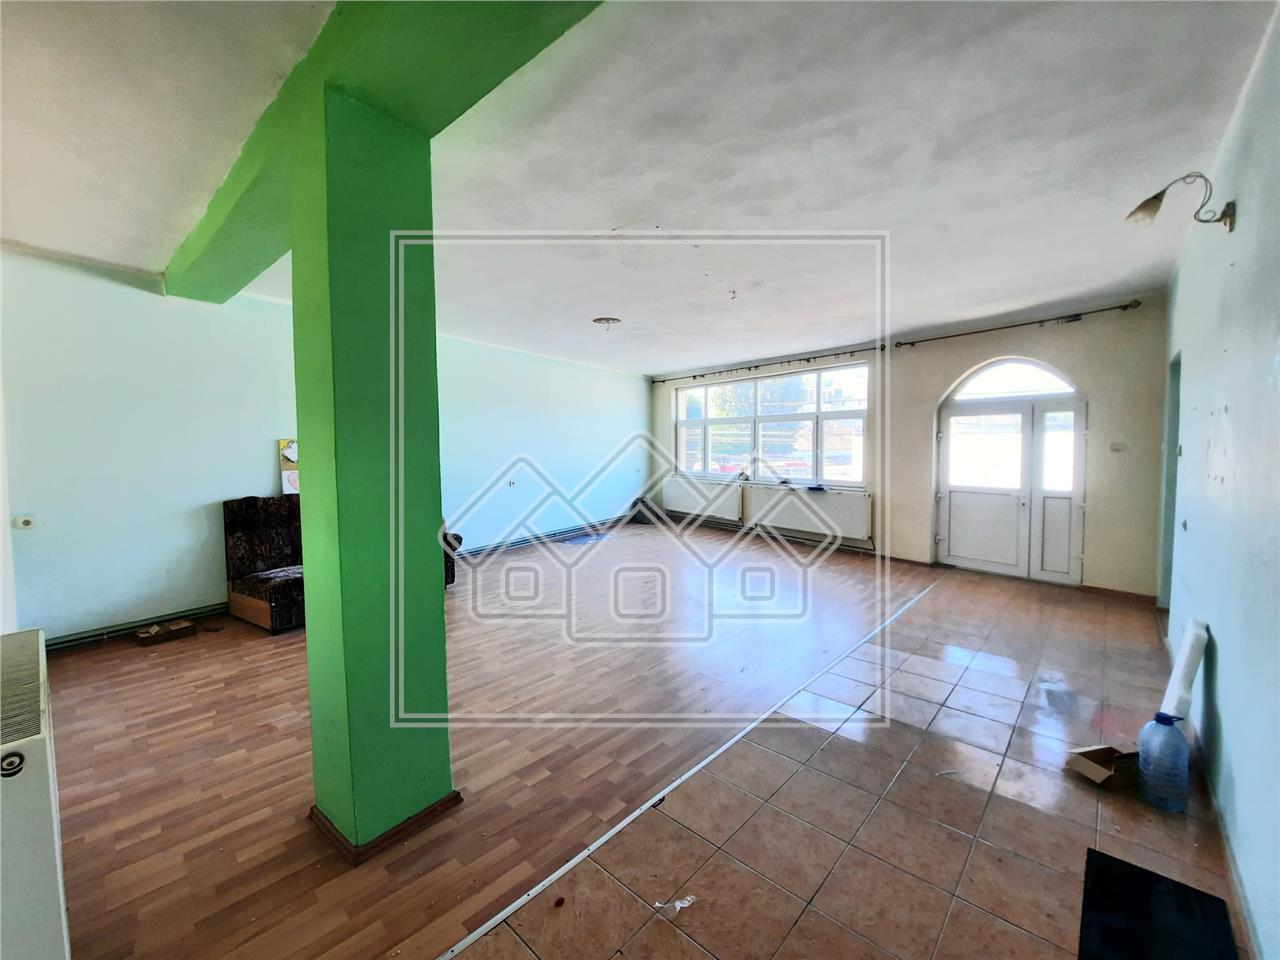 Apartament de inchiriat in Alba Iulia - 2 camere - Zona Centrala